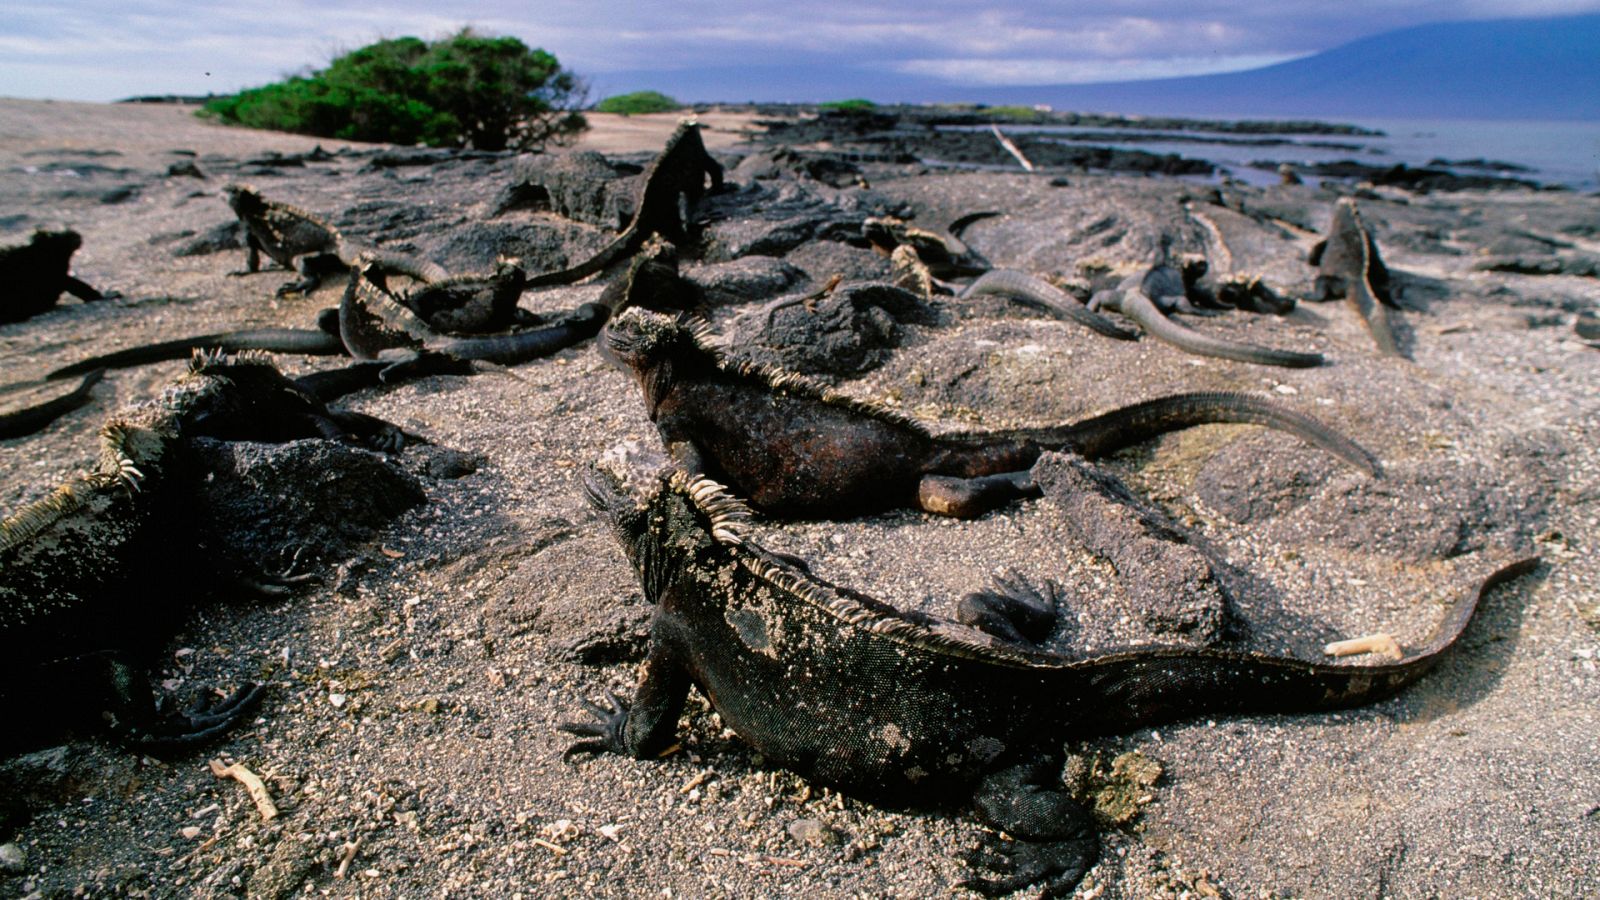 Episodio 1: Las Galápagos - Los secretos naturales de la zona ecuatorial - Documental en RTVE